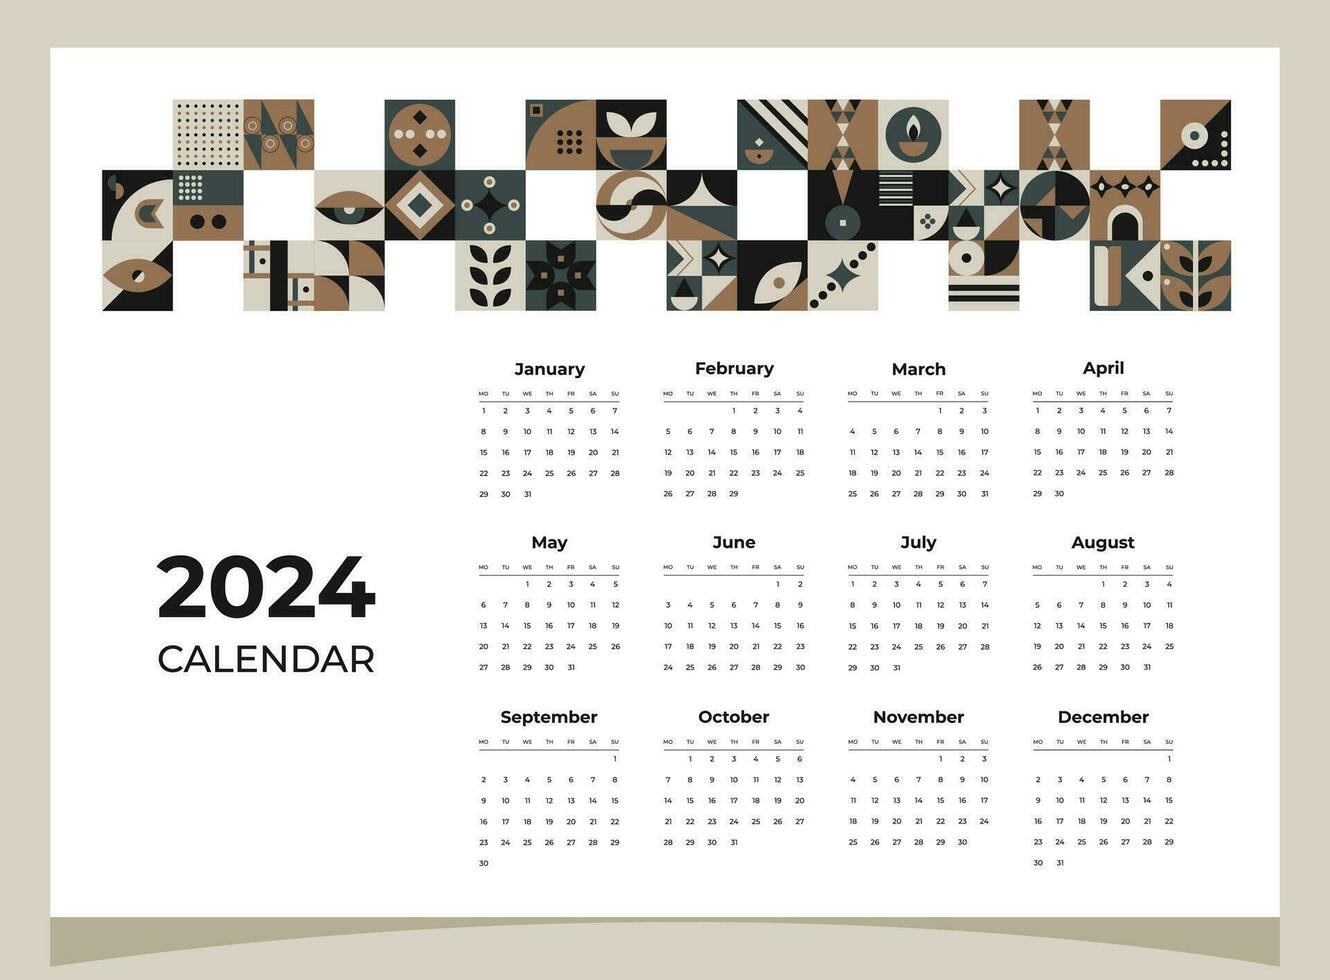 kalender 2024 geometrisk mönster. kalender mall för 2024 år med geometrisk former. vektor